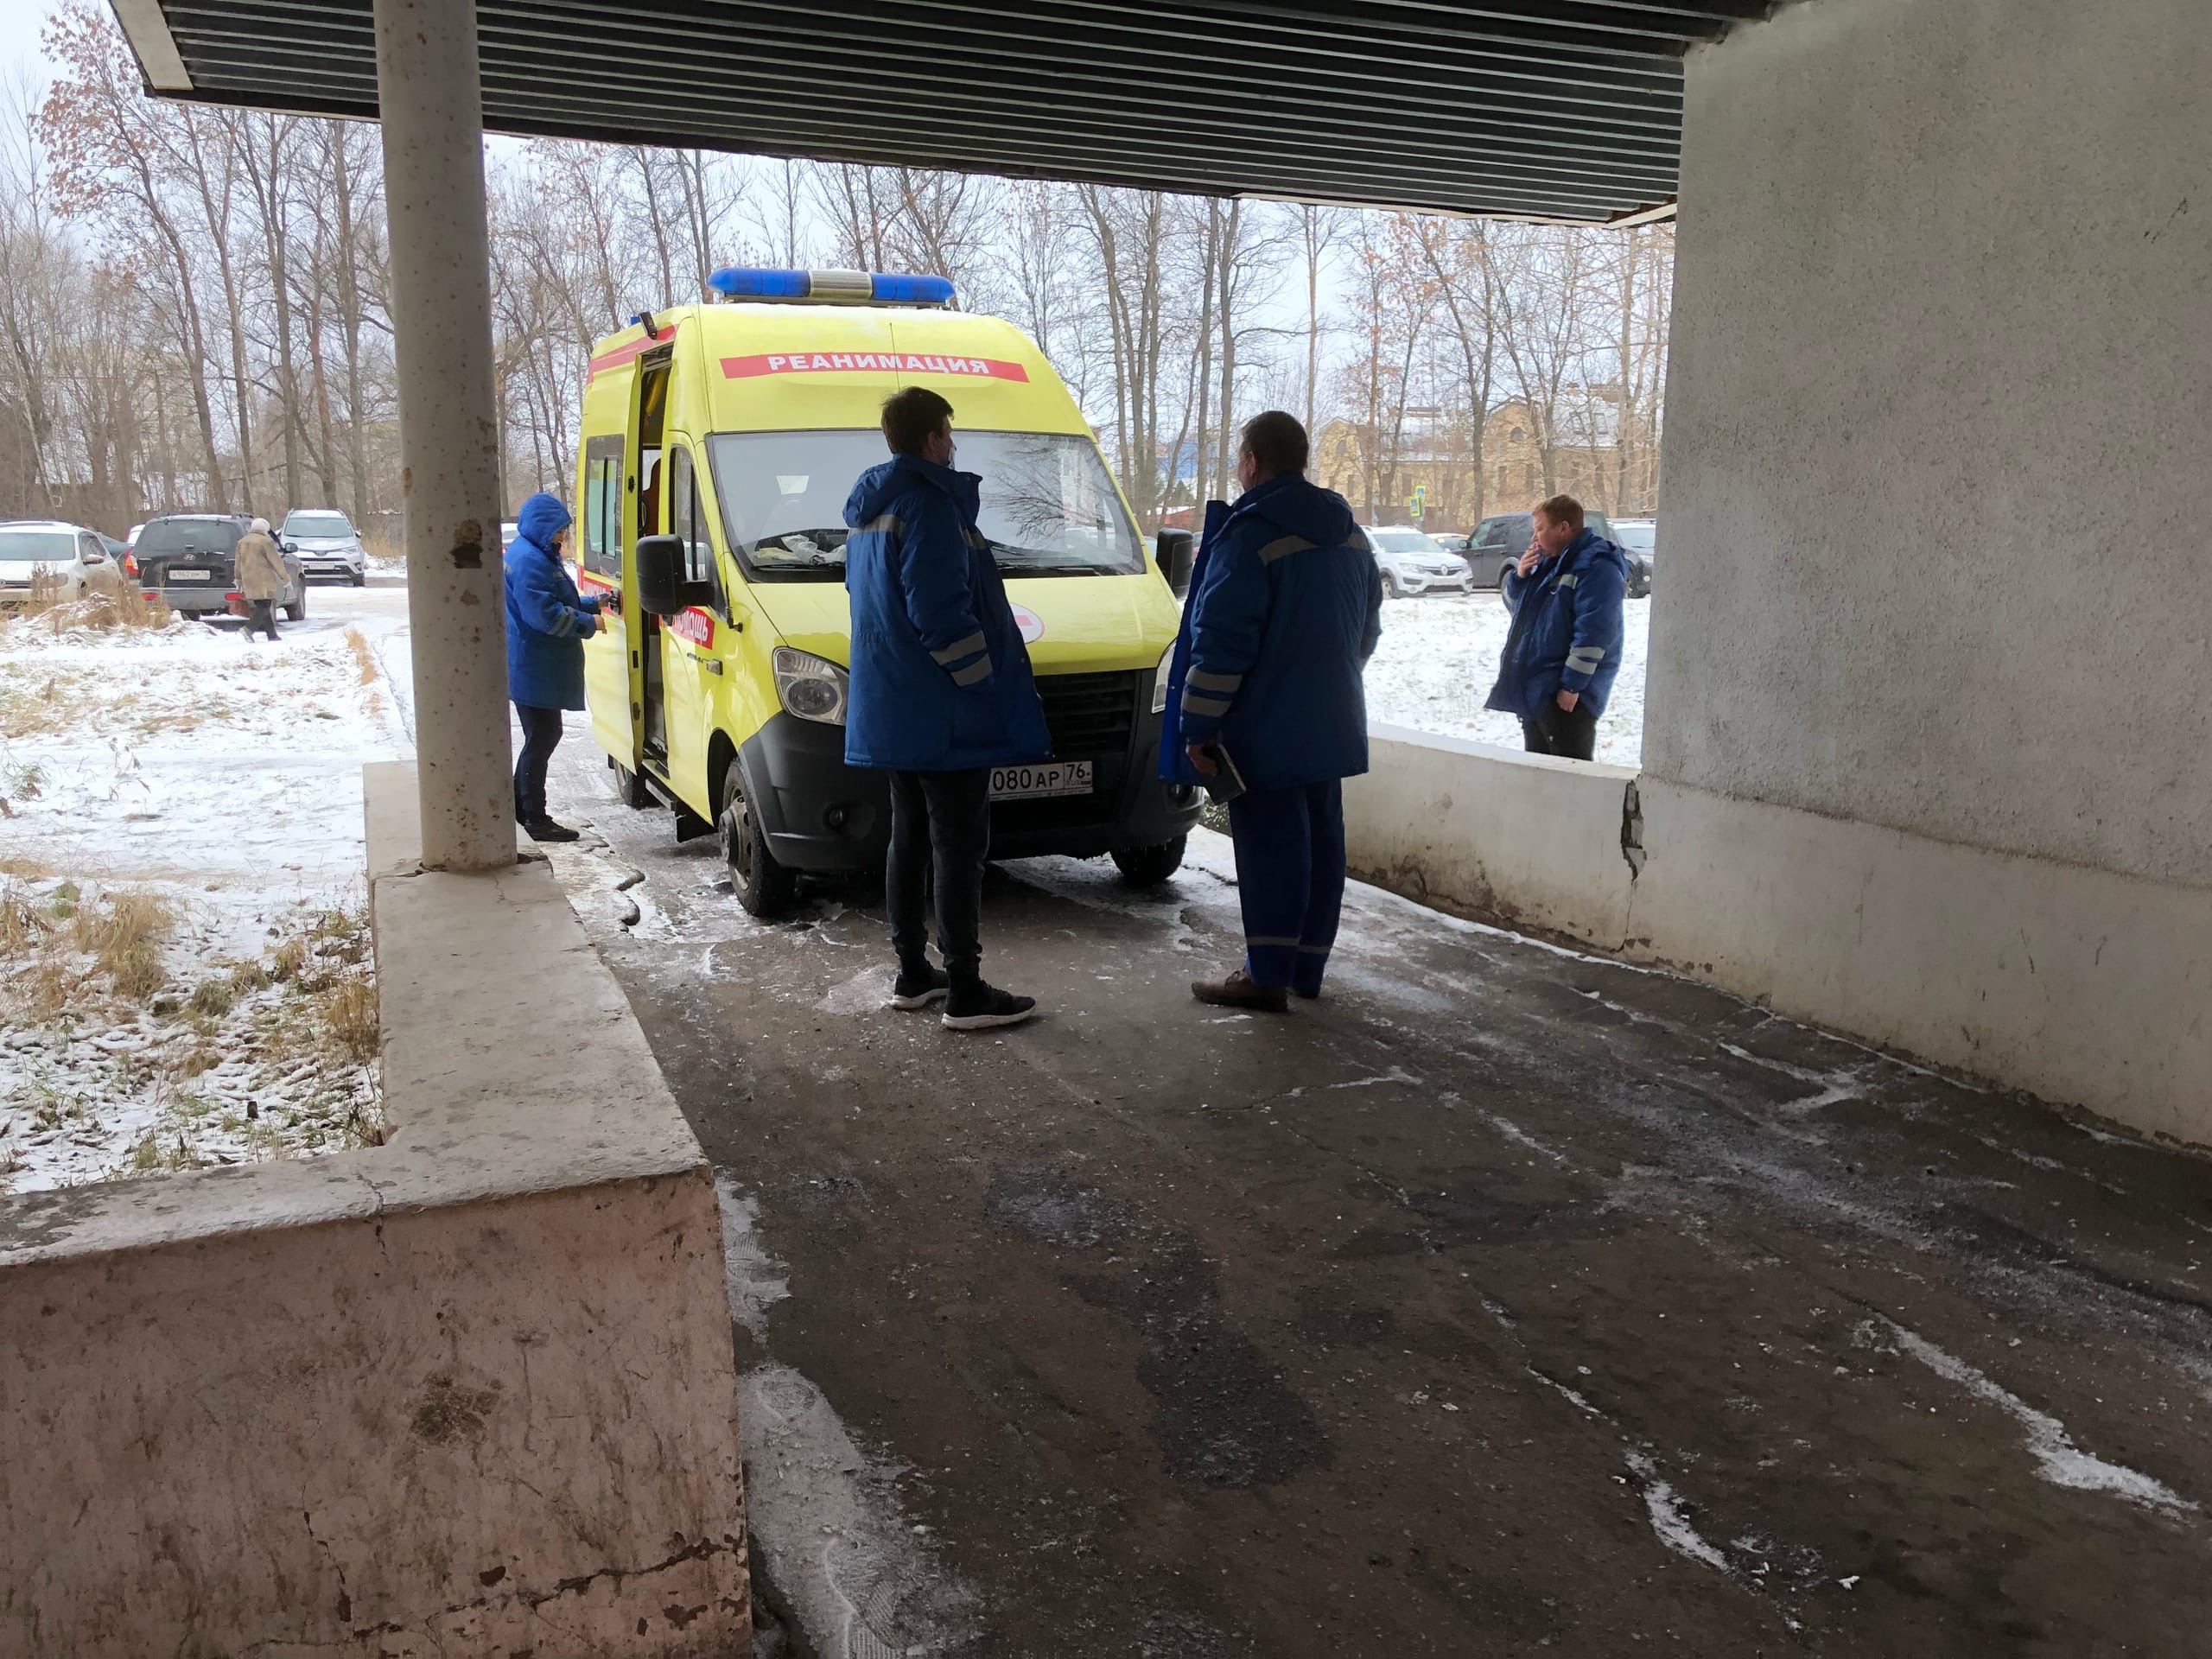  Ярославна вымыла курткой врача скорой помощи пол за отказ надеть бахилы